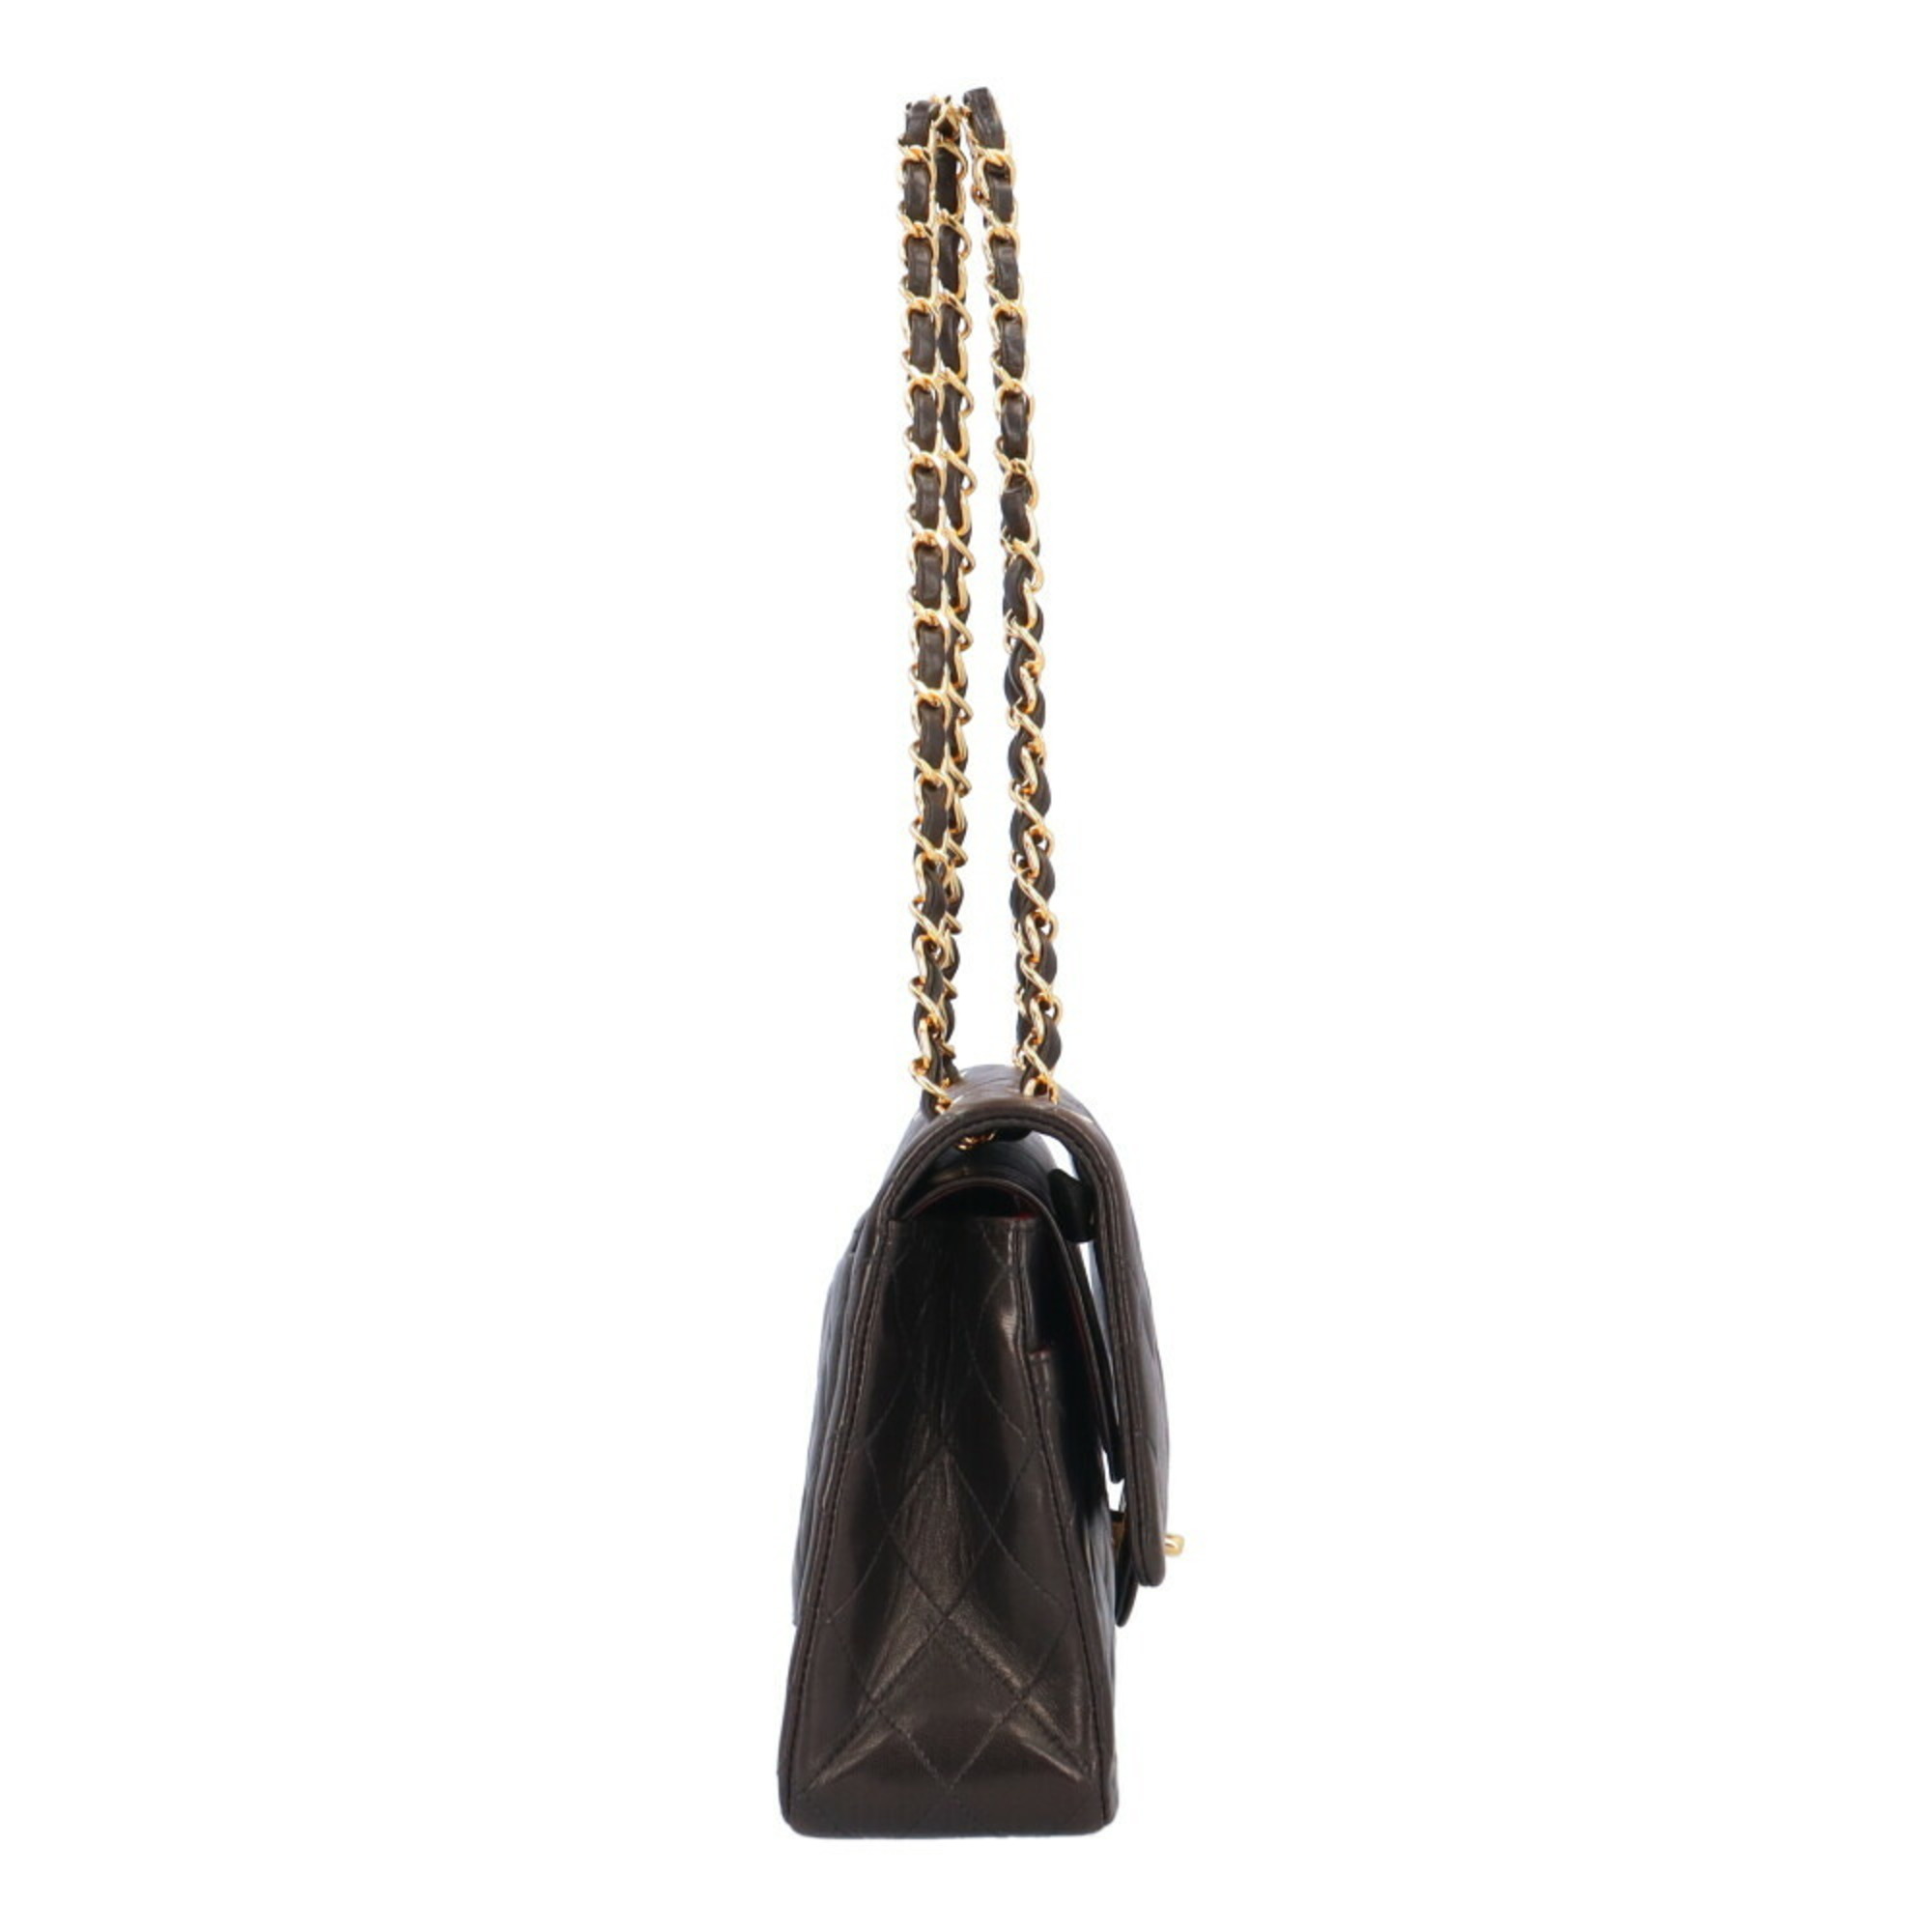 Chanel W Flap 25 Matelasse Shoulder Bag Lambskin Black Women's CHANEL